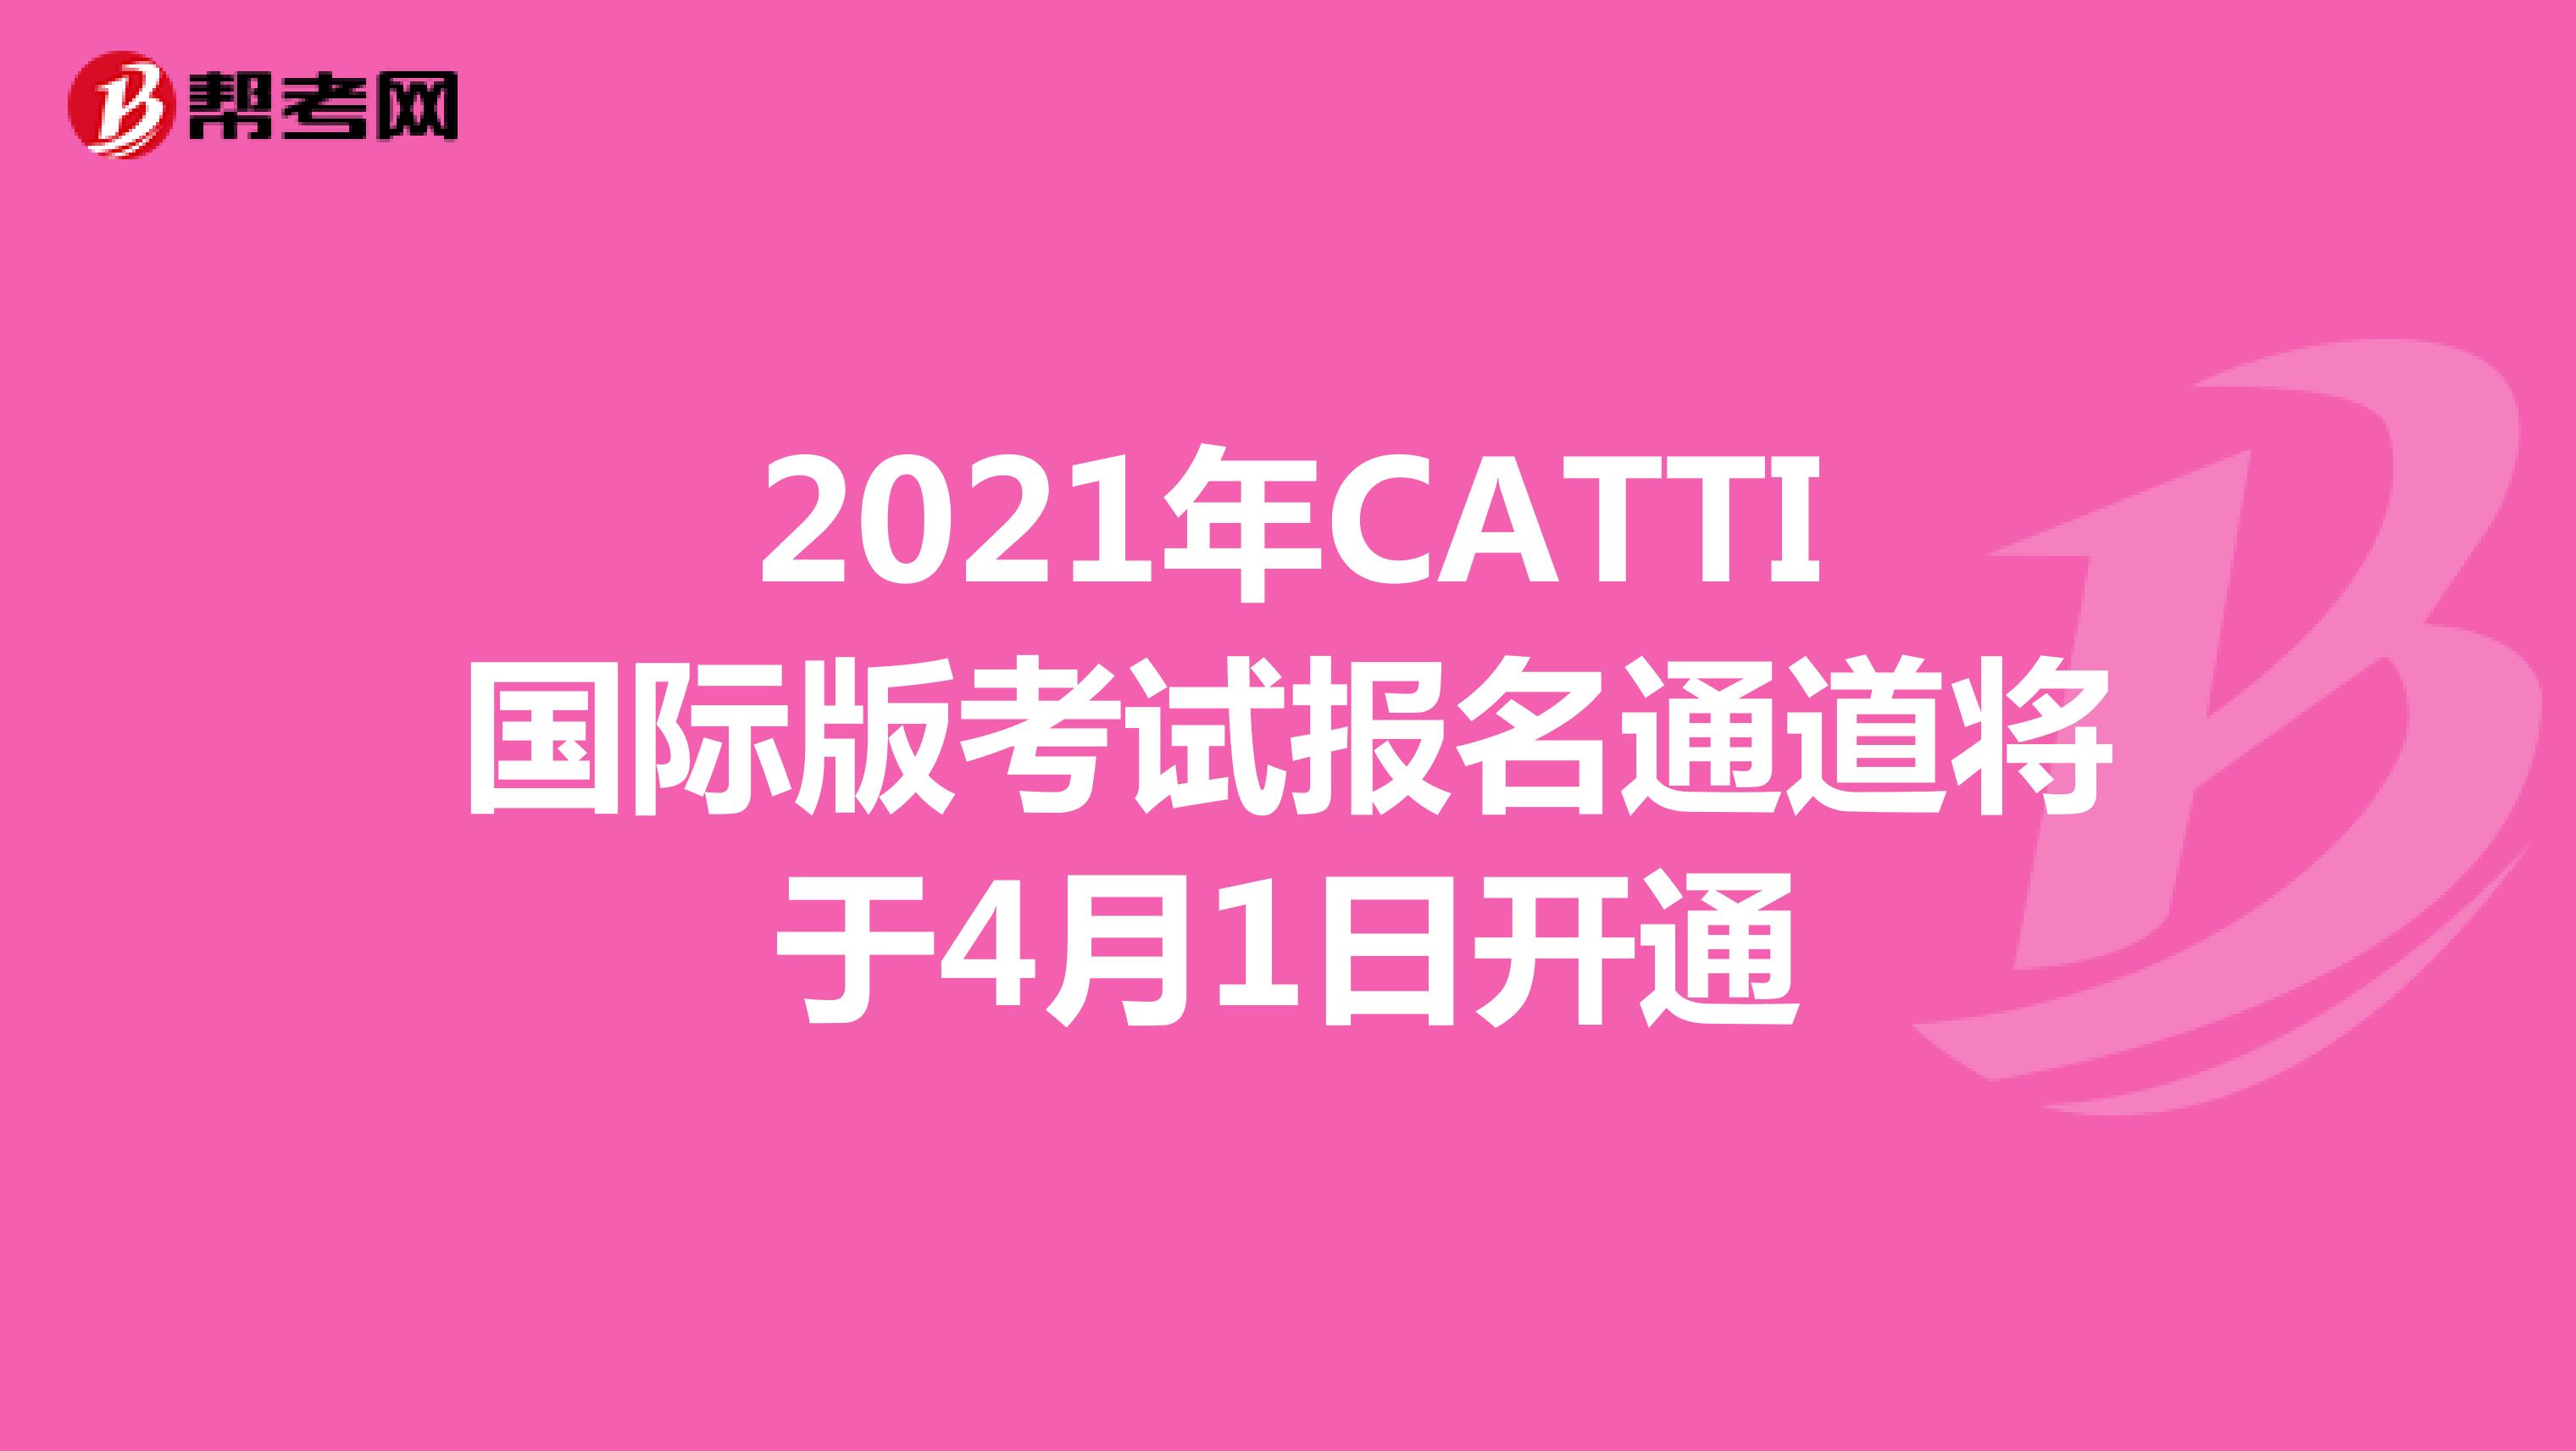 2021年CATTI国际版考试报名通道将于4月1日开通